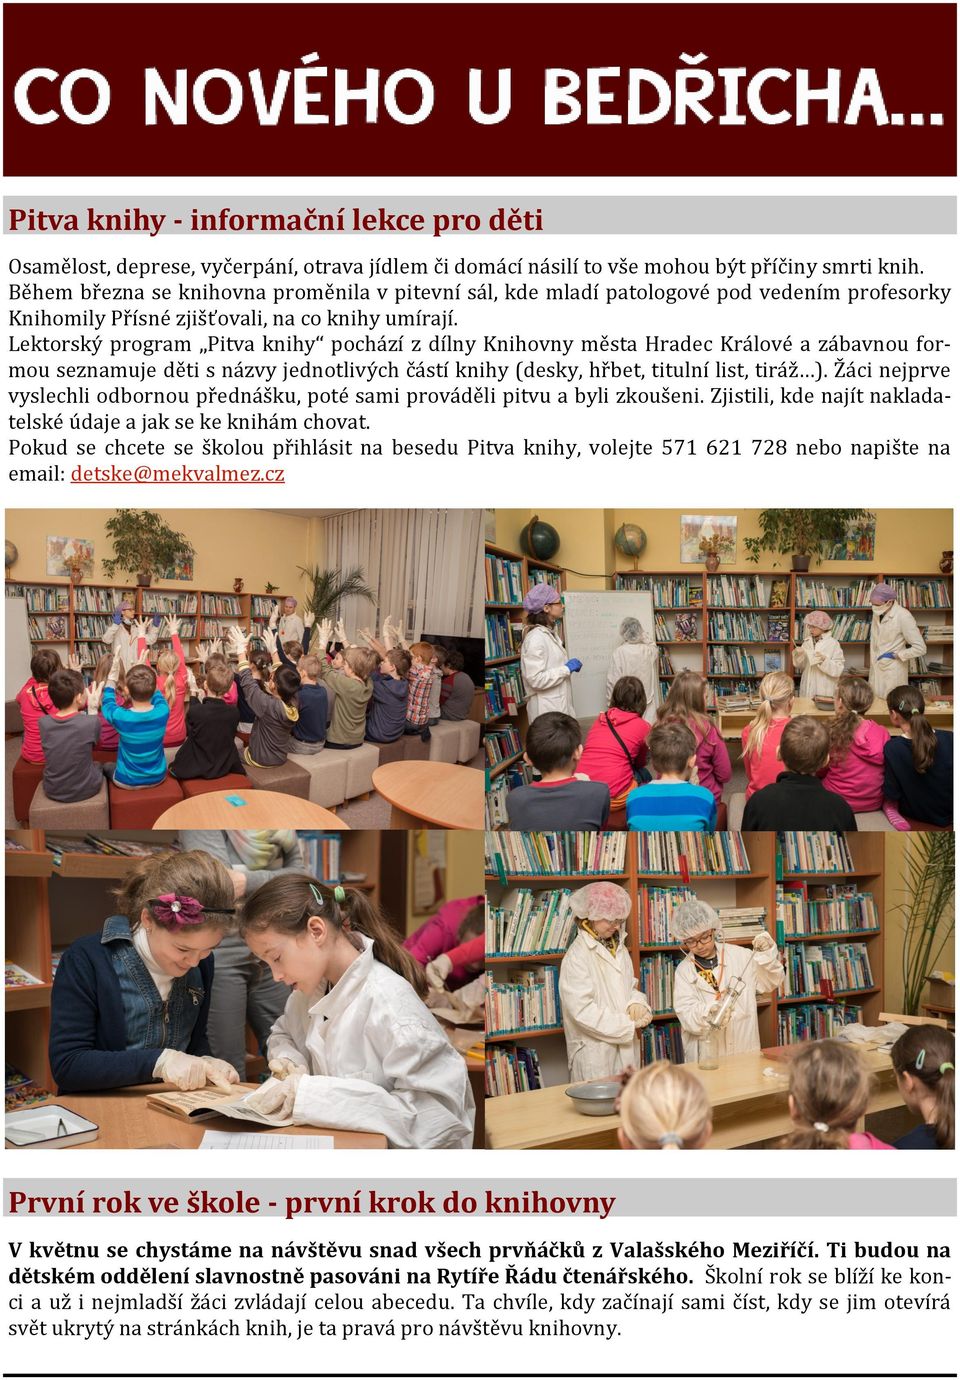 Lektorský program Pitva knihy pochází z dílny Knihovny města Hradec Králové a zábavnou formou seznamuje děti s názvy jednotlivých částí knihy (desky, hřbet, titulní list, tiráž ).